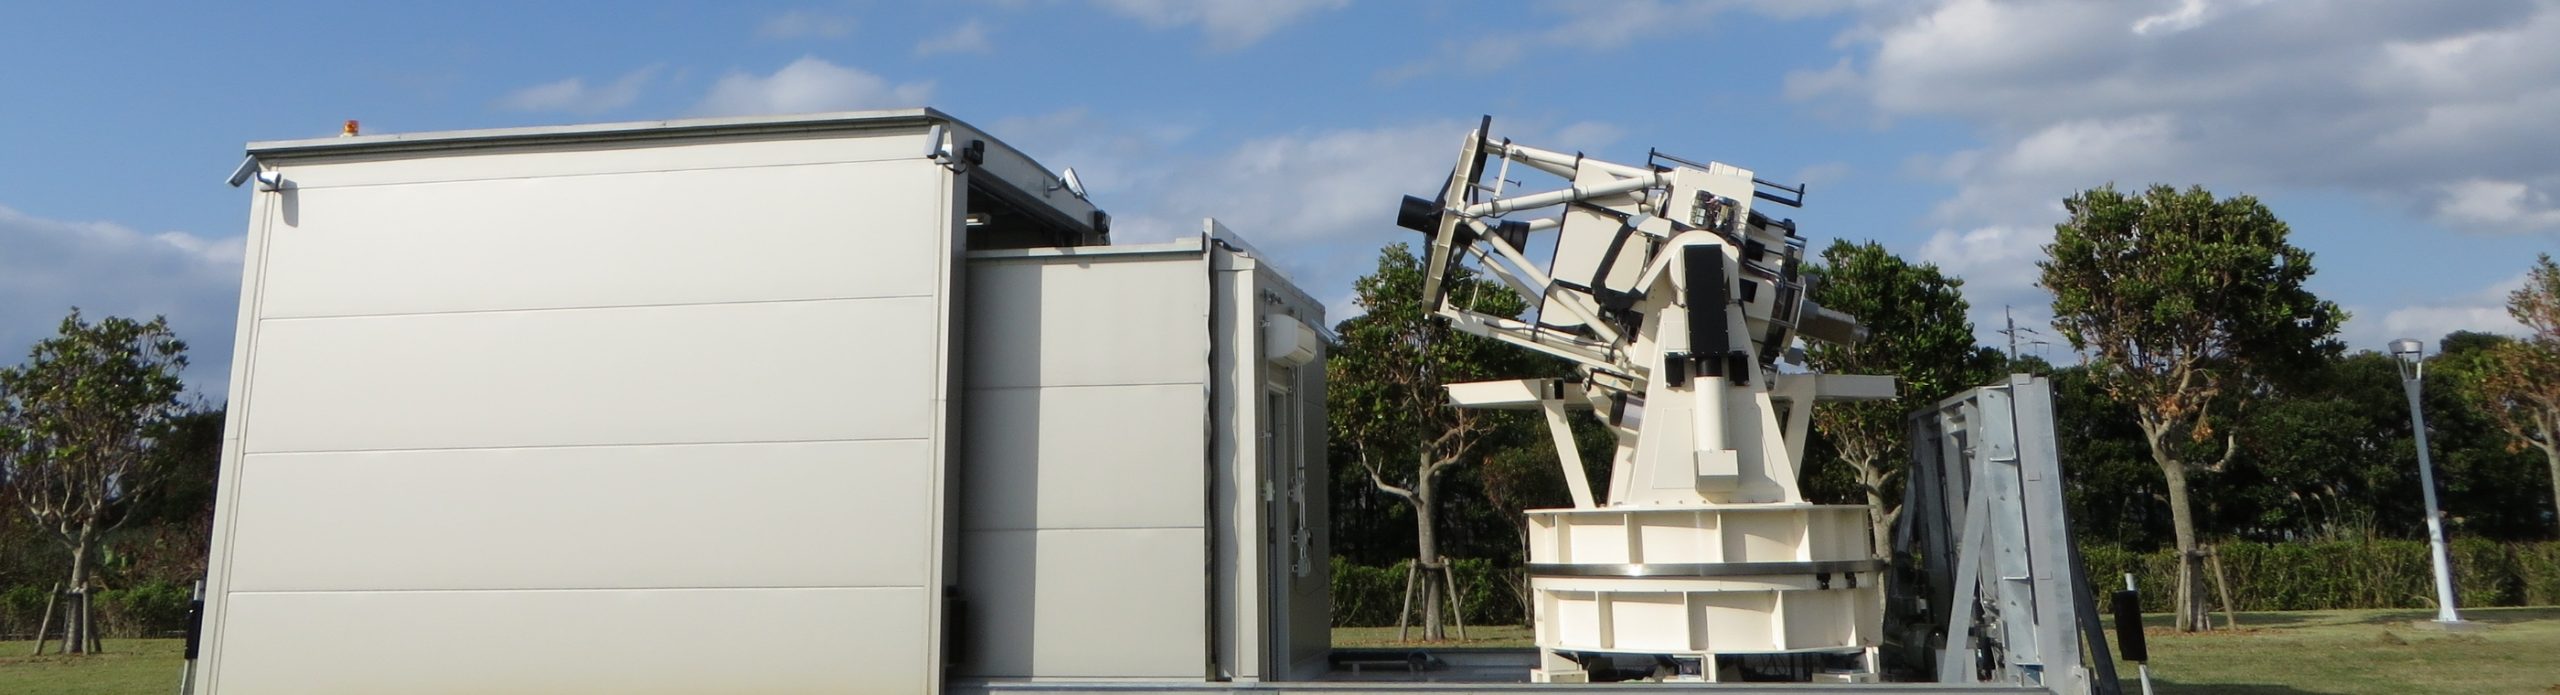 納入実績 国内外で利用される様々な天体観測機器 株式会社西村製作所